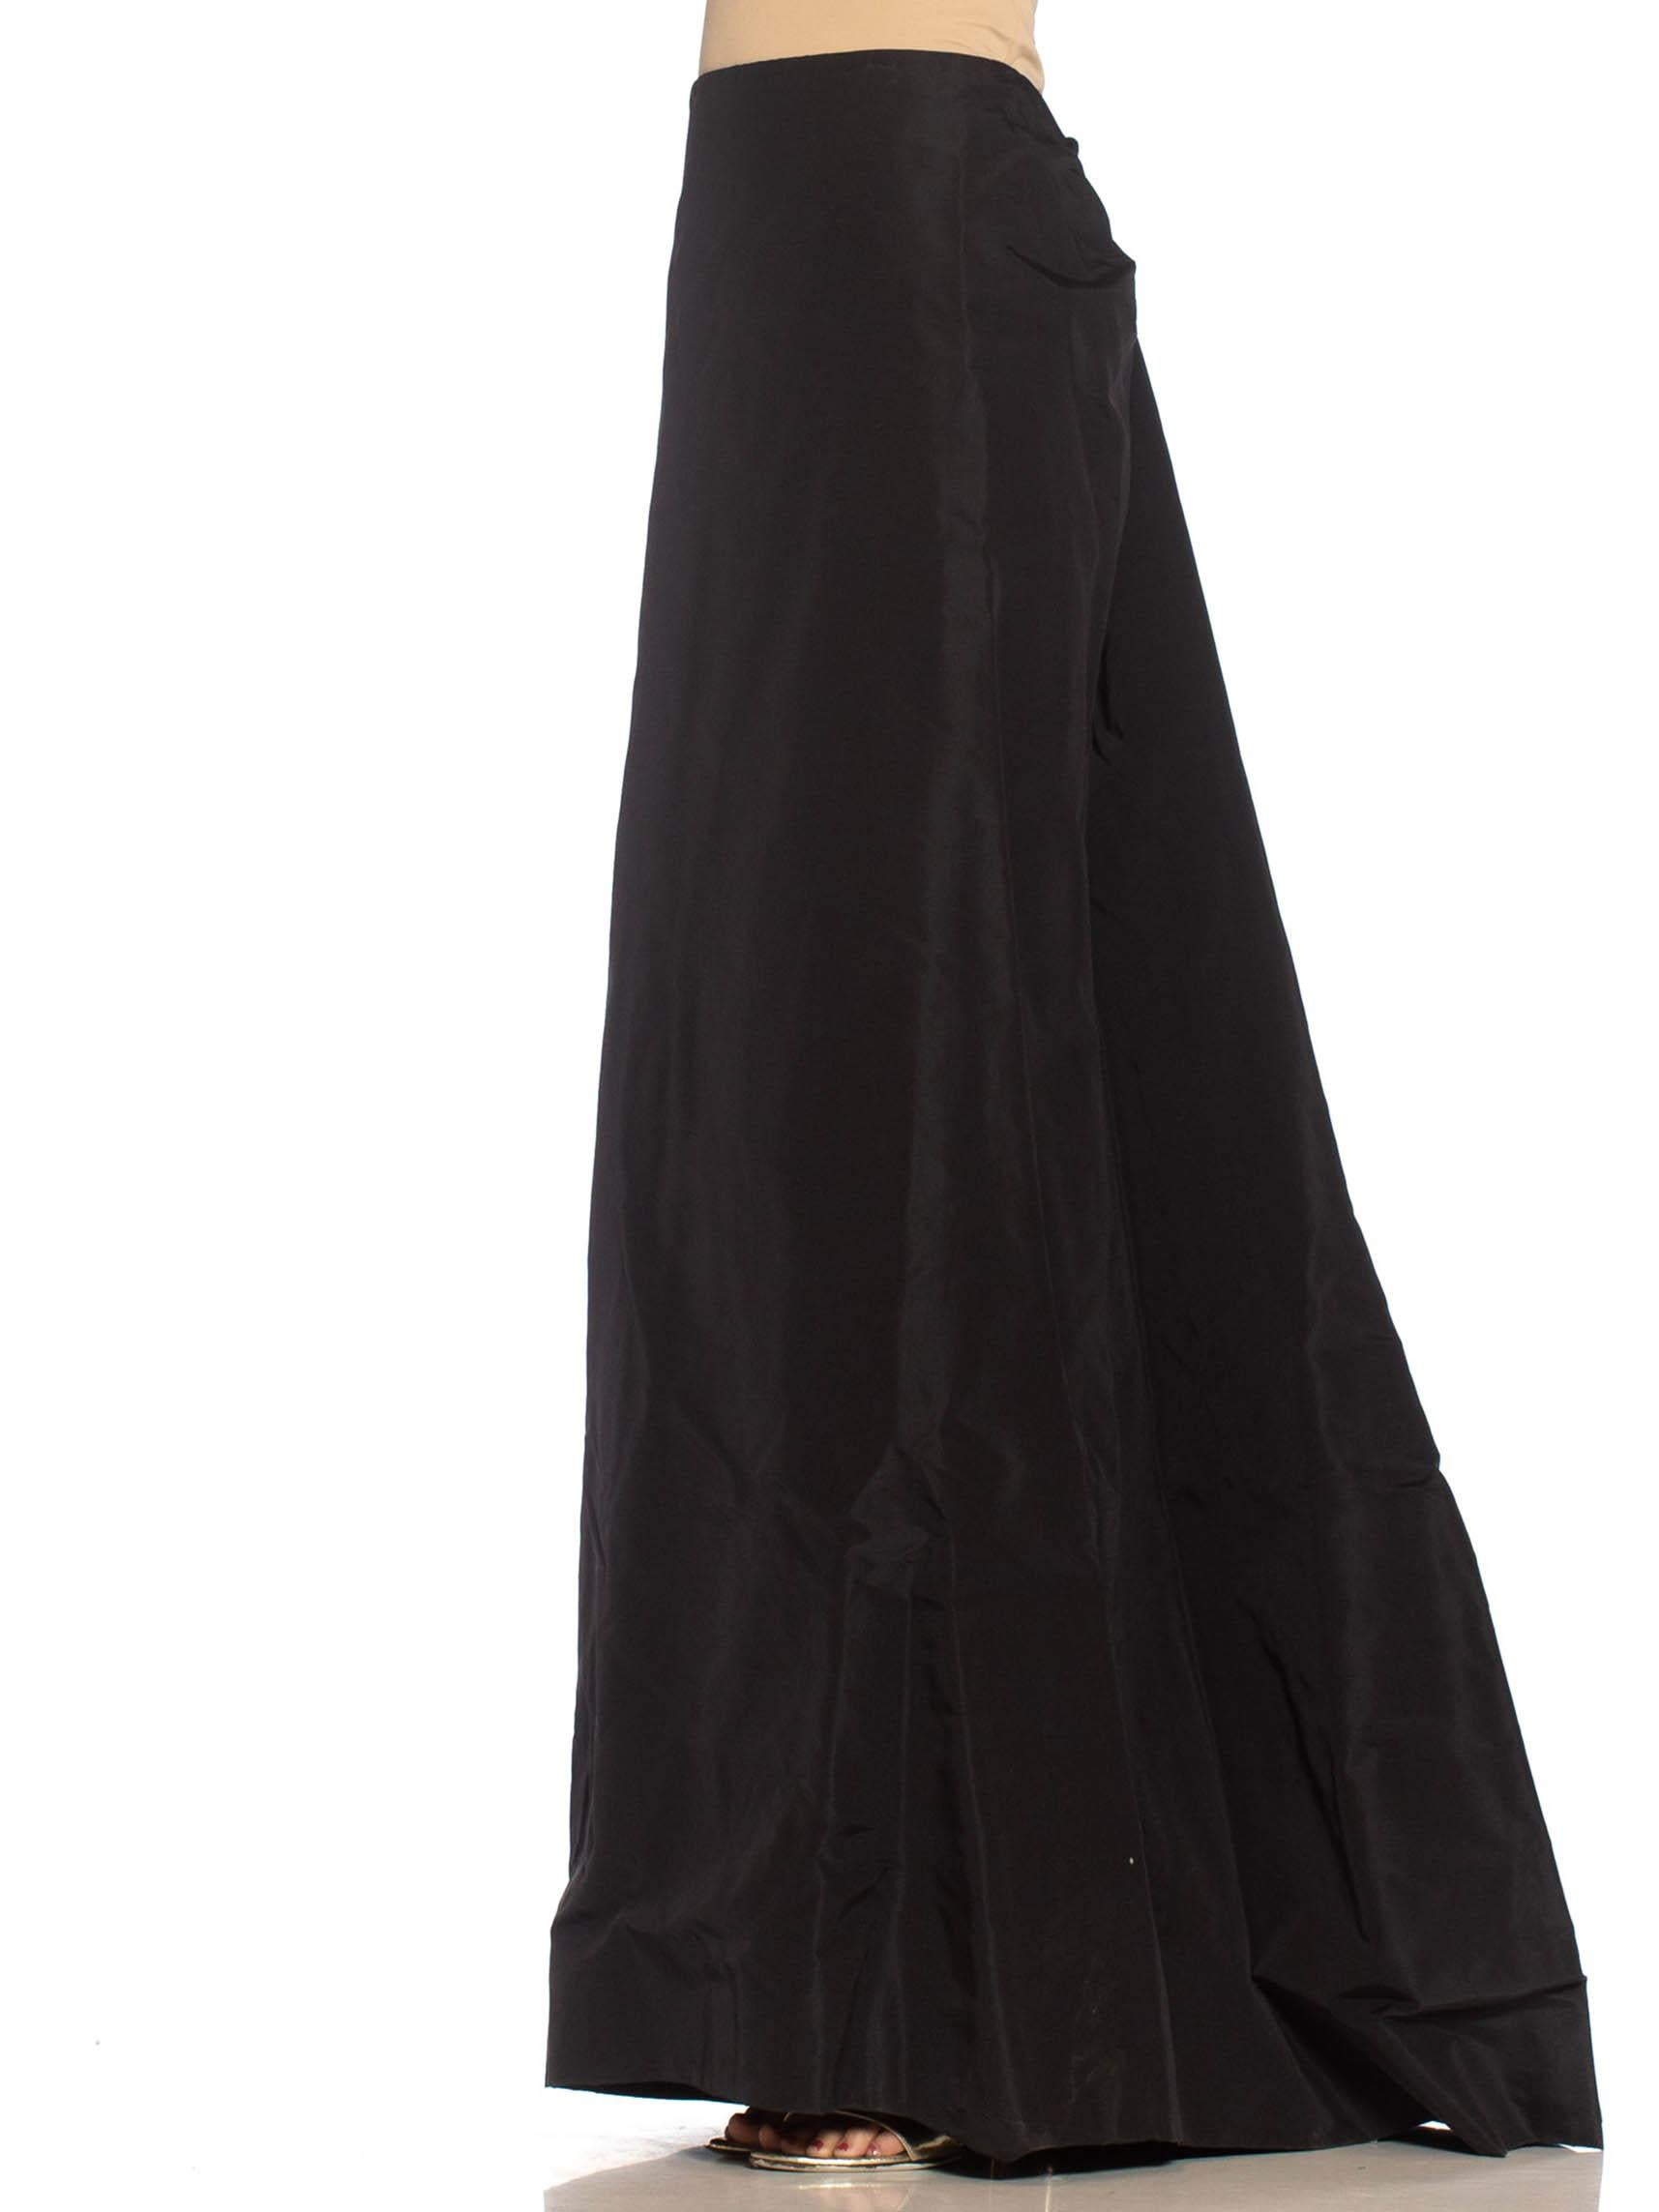 michael kors long black skirt